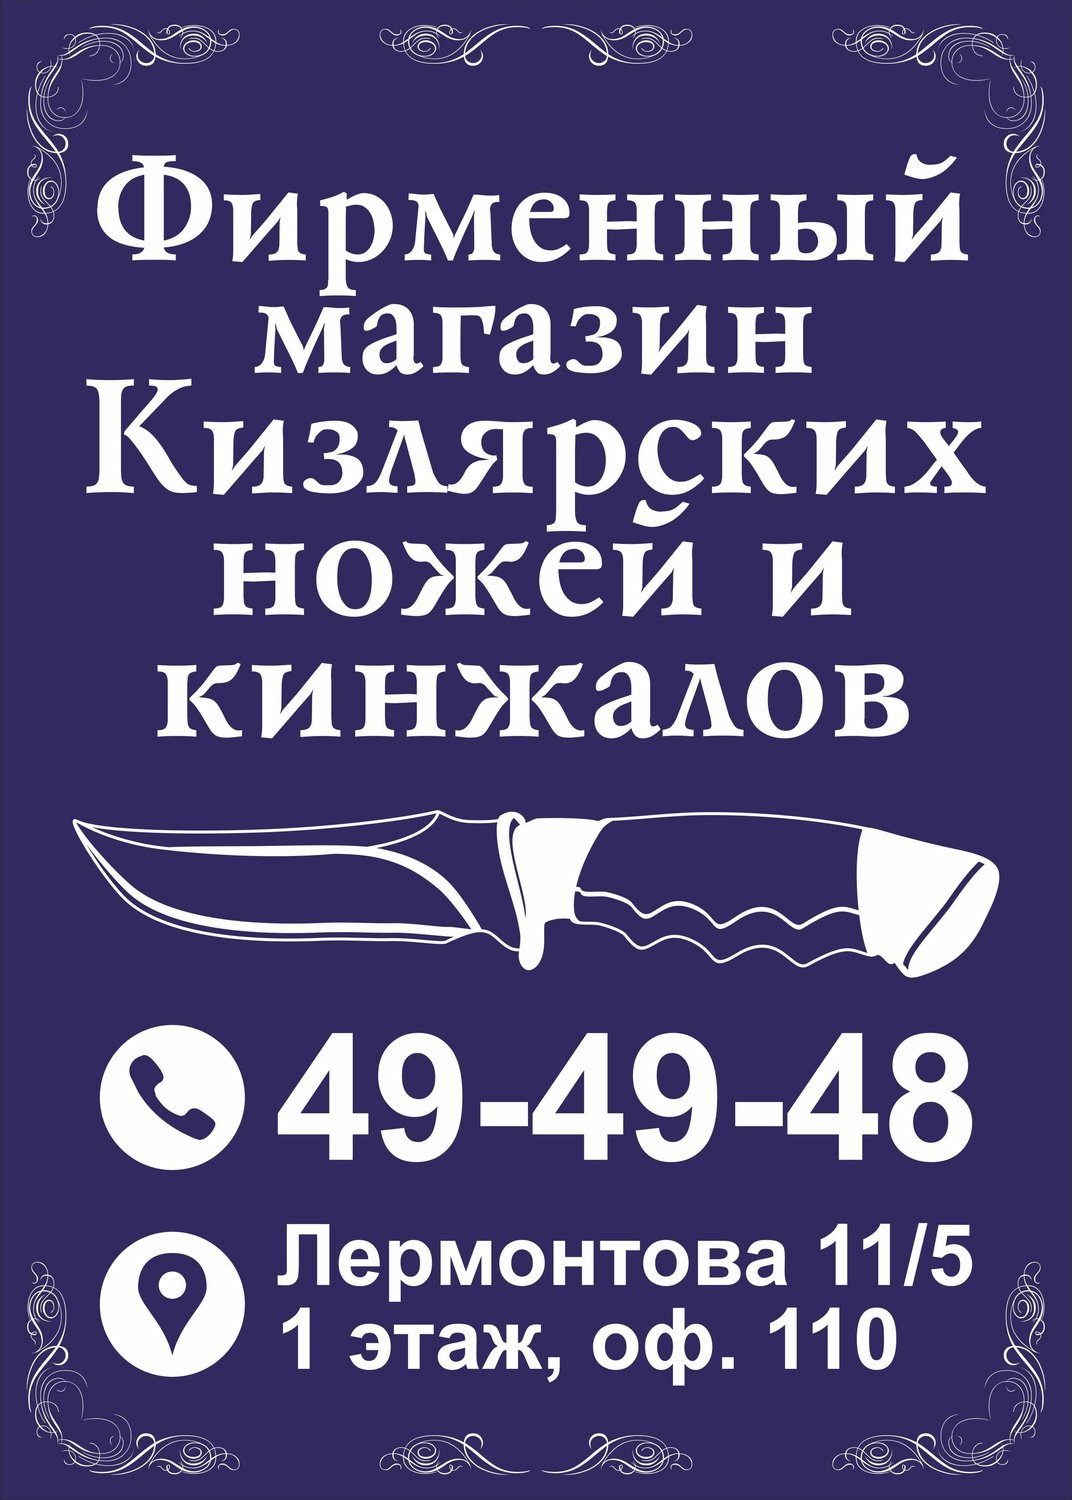 Магазин Кизлярских Ножей